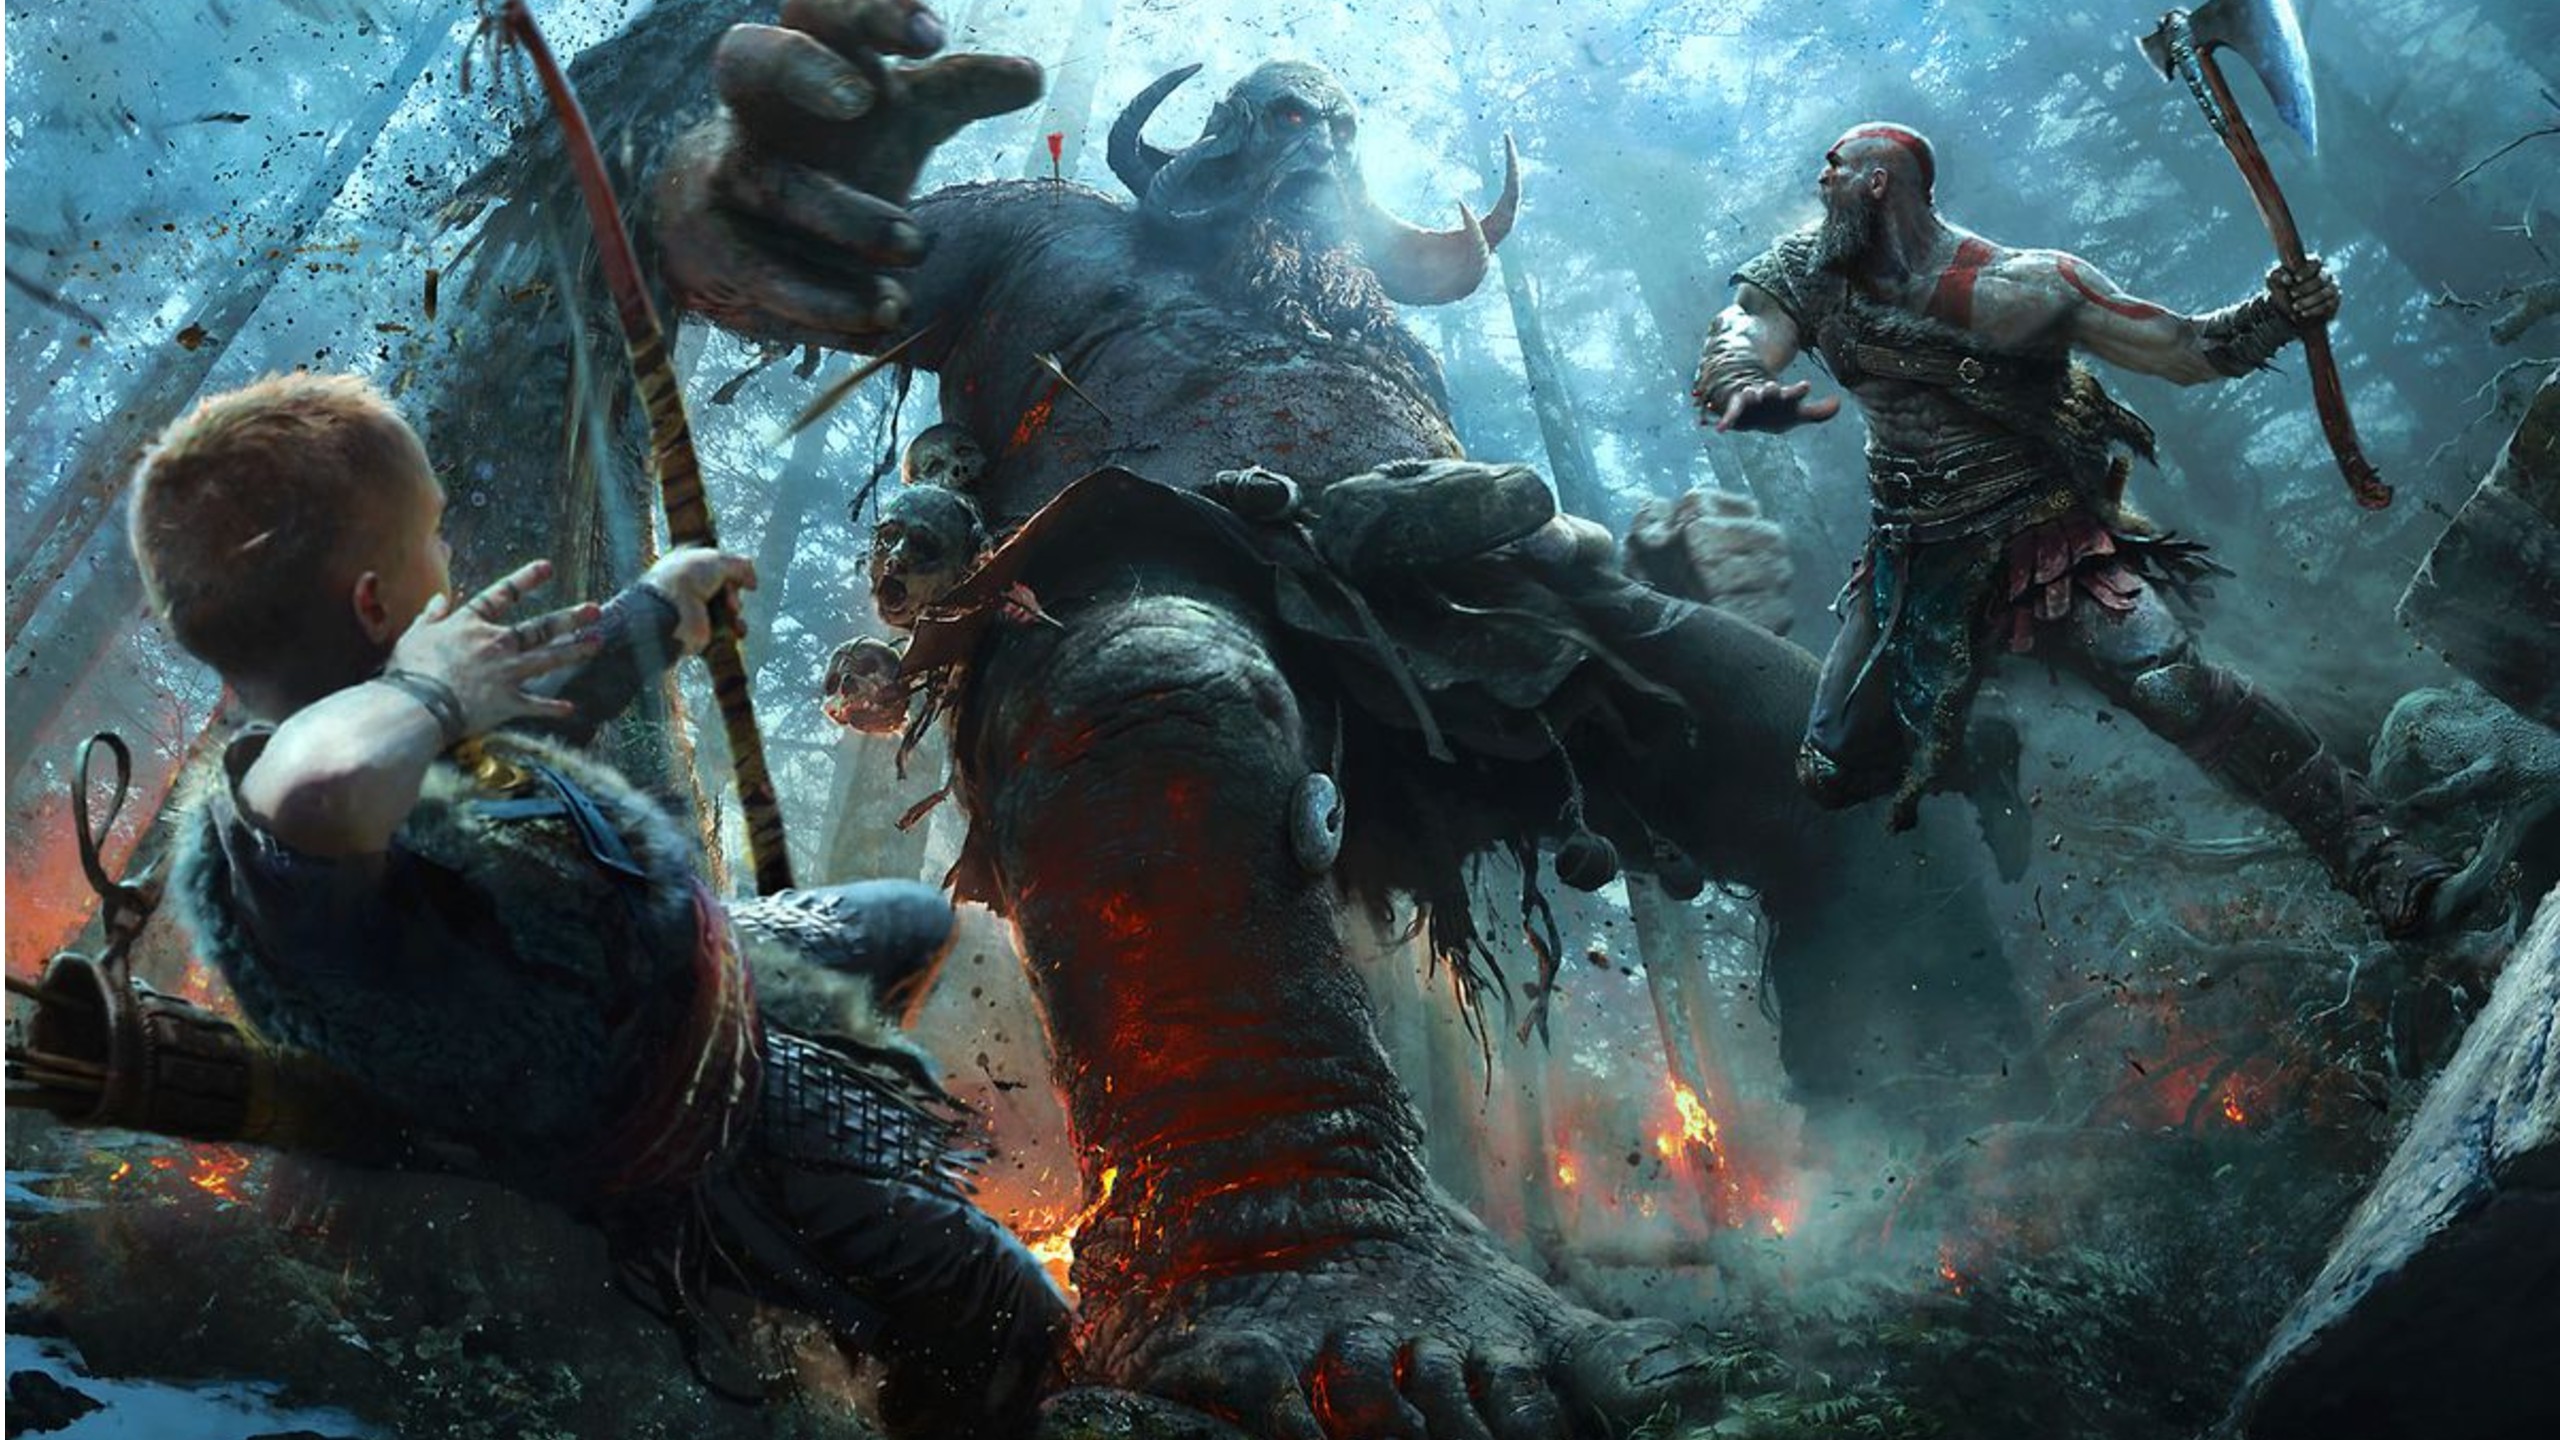 PlayStation's God Of War 2 delayed until 2022